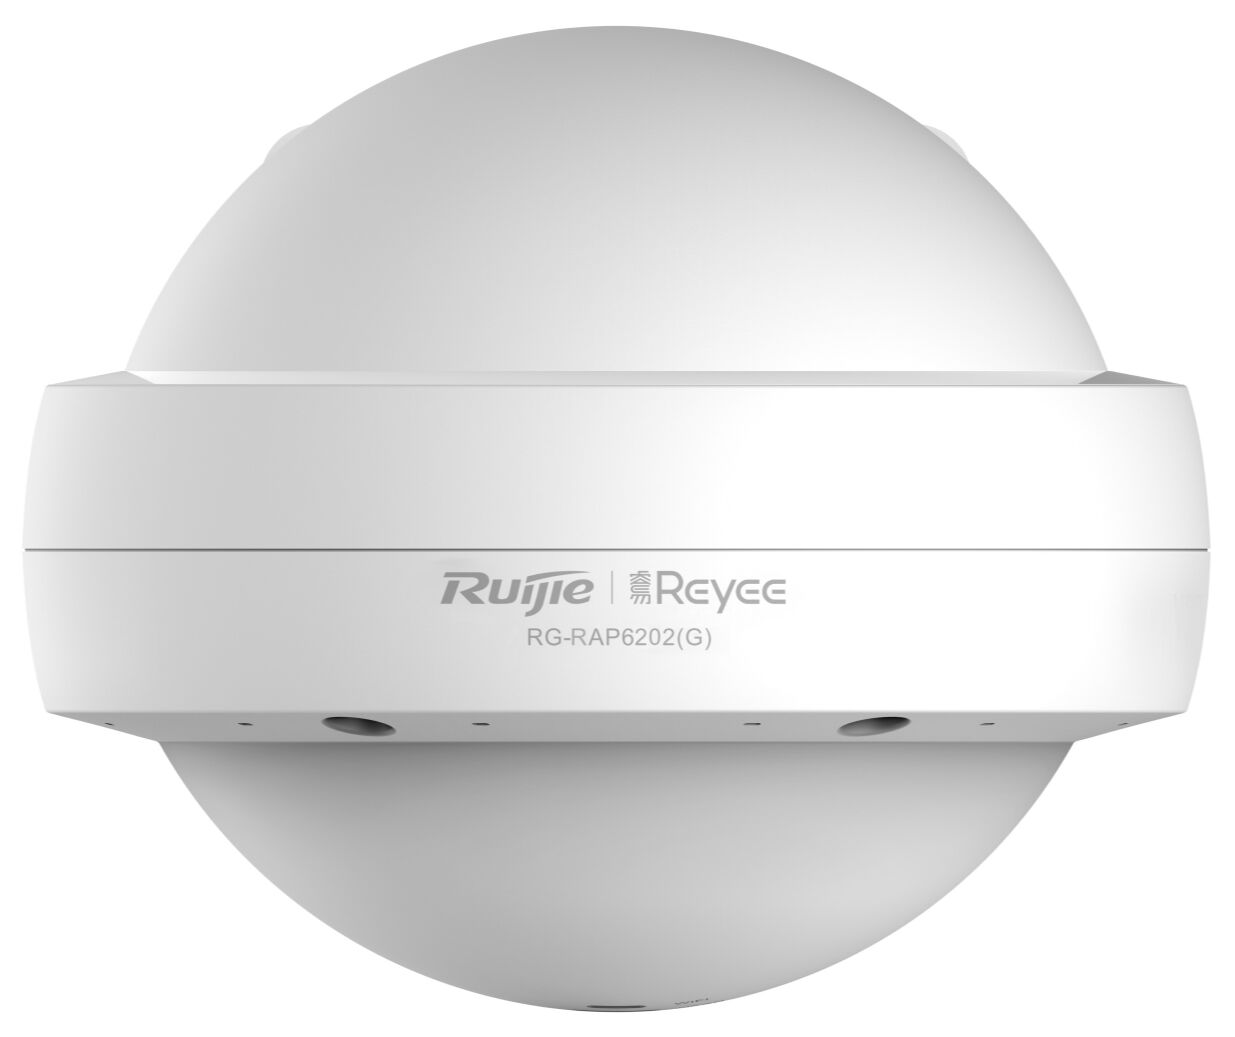 Точка доступа Ruijie Ruijie RG-RAP6202(G) /2.4 GHz,5 GHz a,ac,b,g,n/